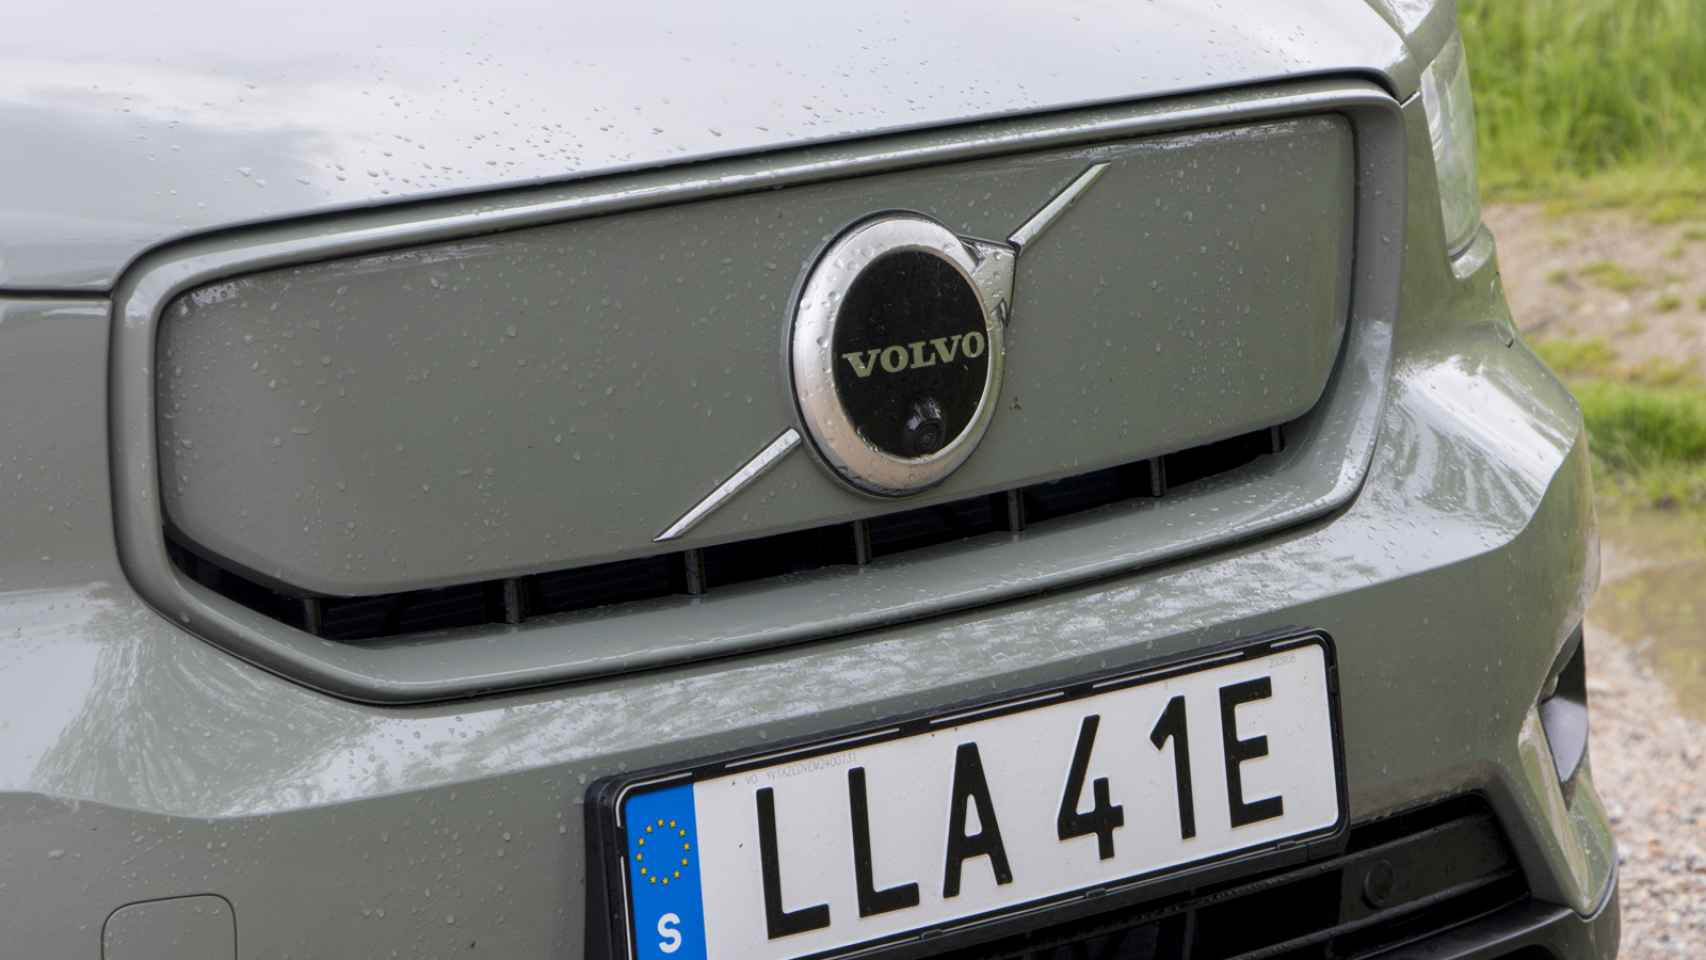 Galería de fotos del nuevo Volvo XC40 Recharge electric.